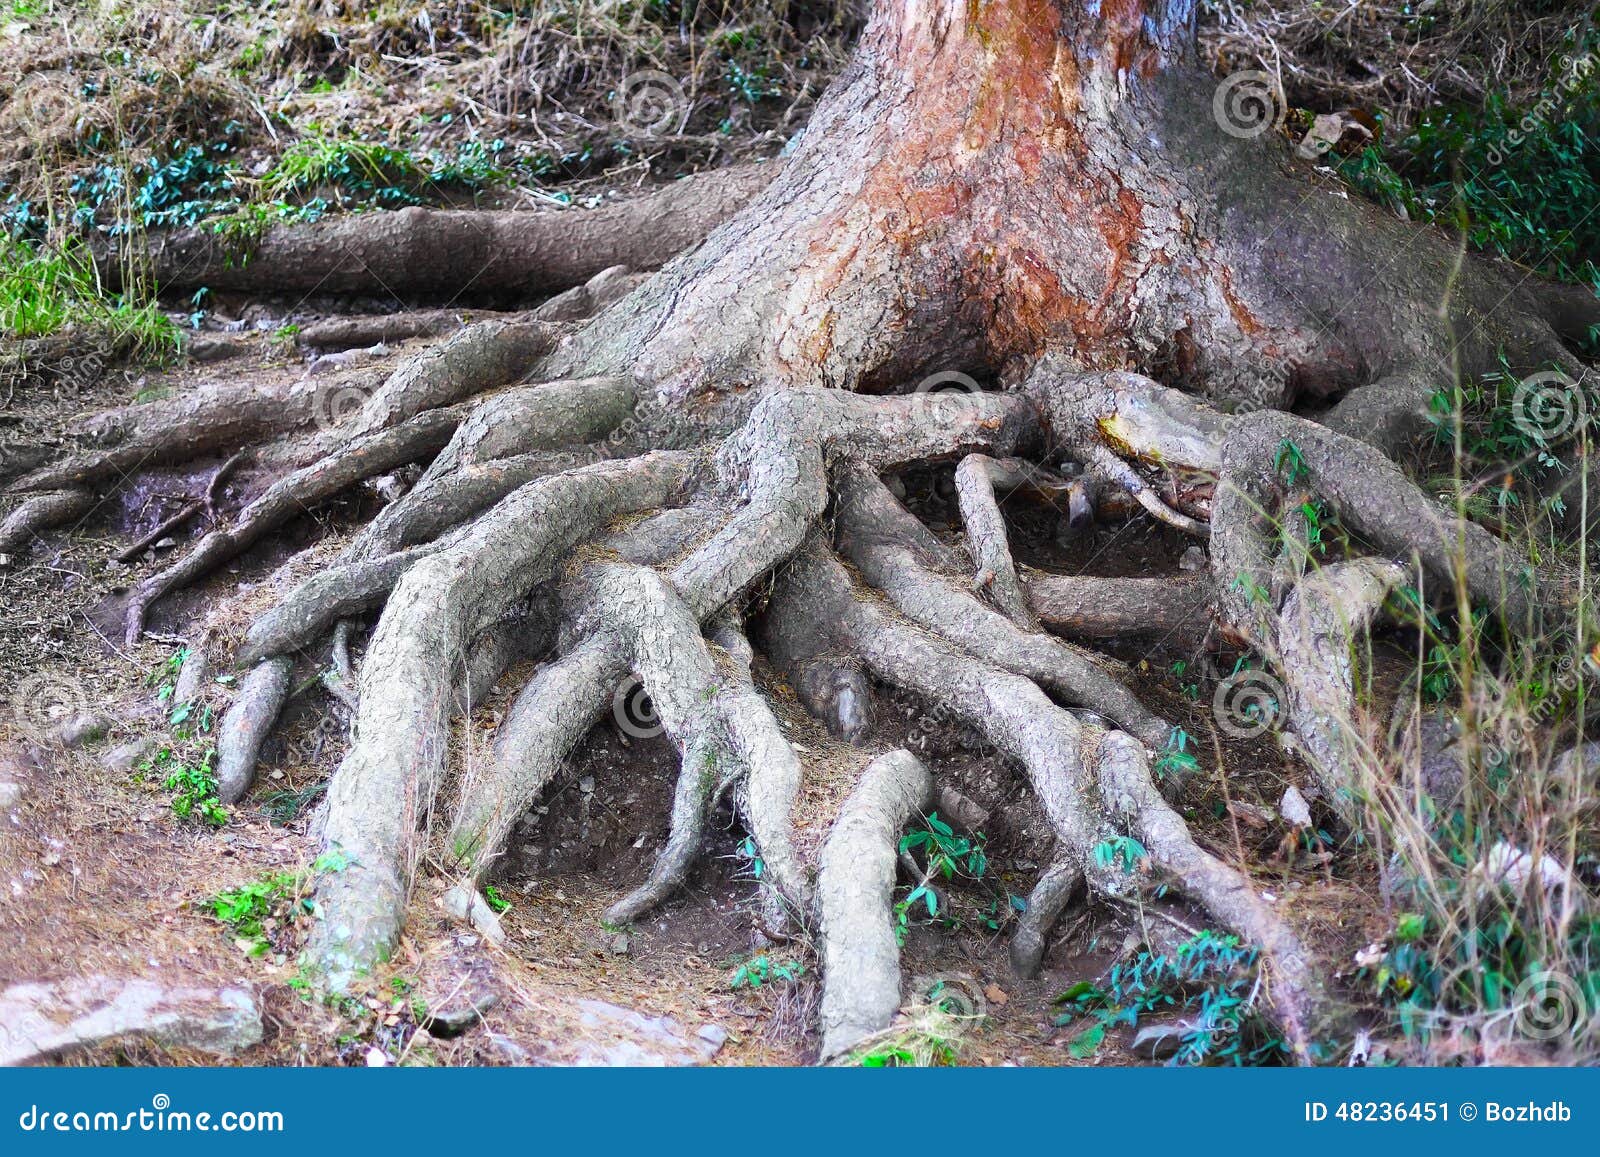 Больший корень это. Большие корни. Молодое дерево с корнями. Пальцы корни дерева. Большая флейта корень дерева.